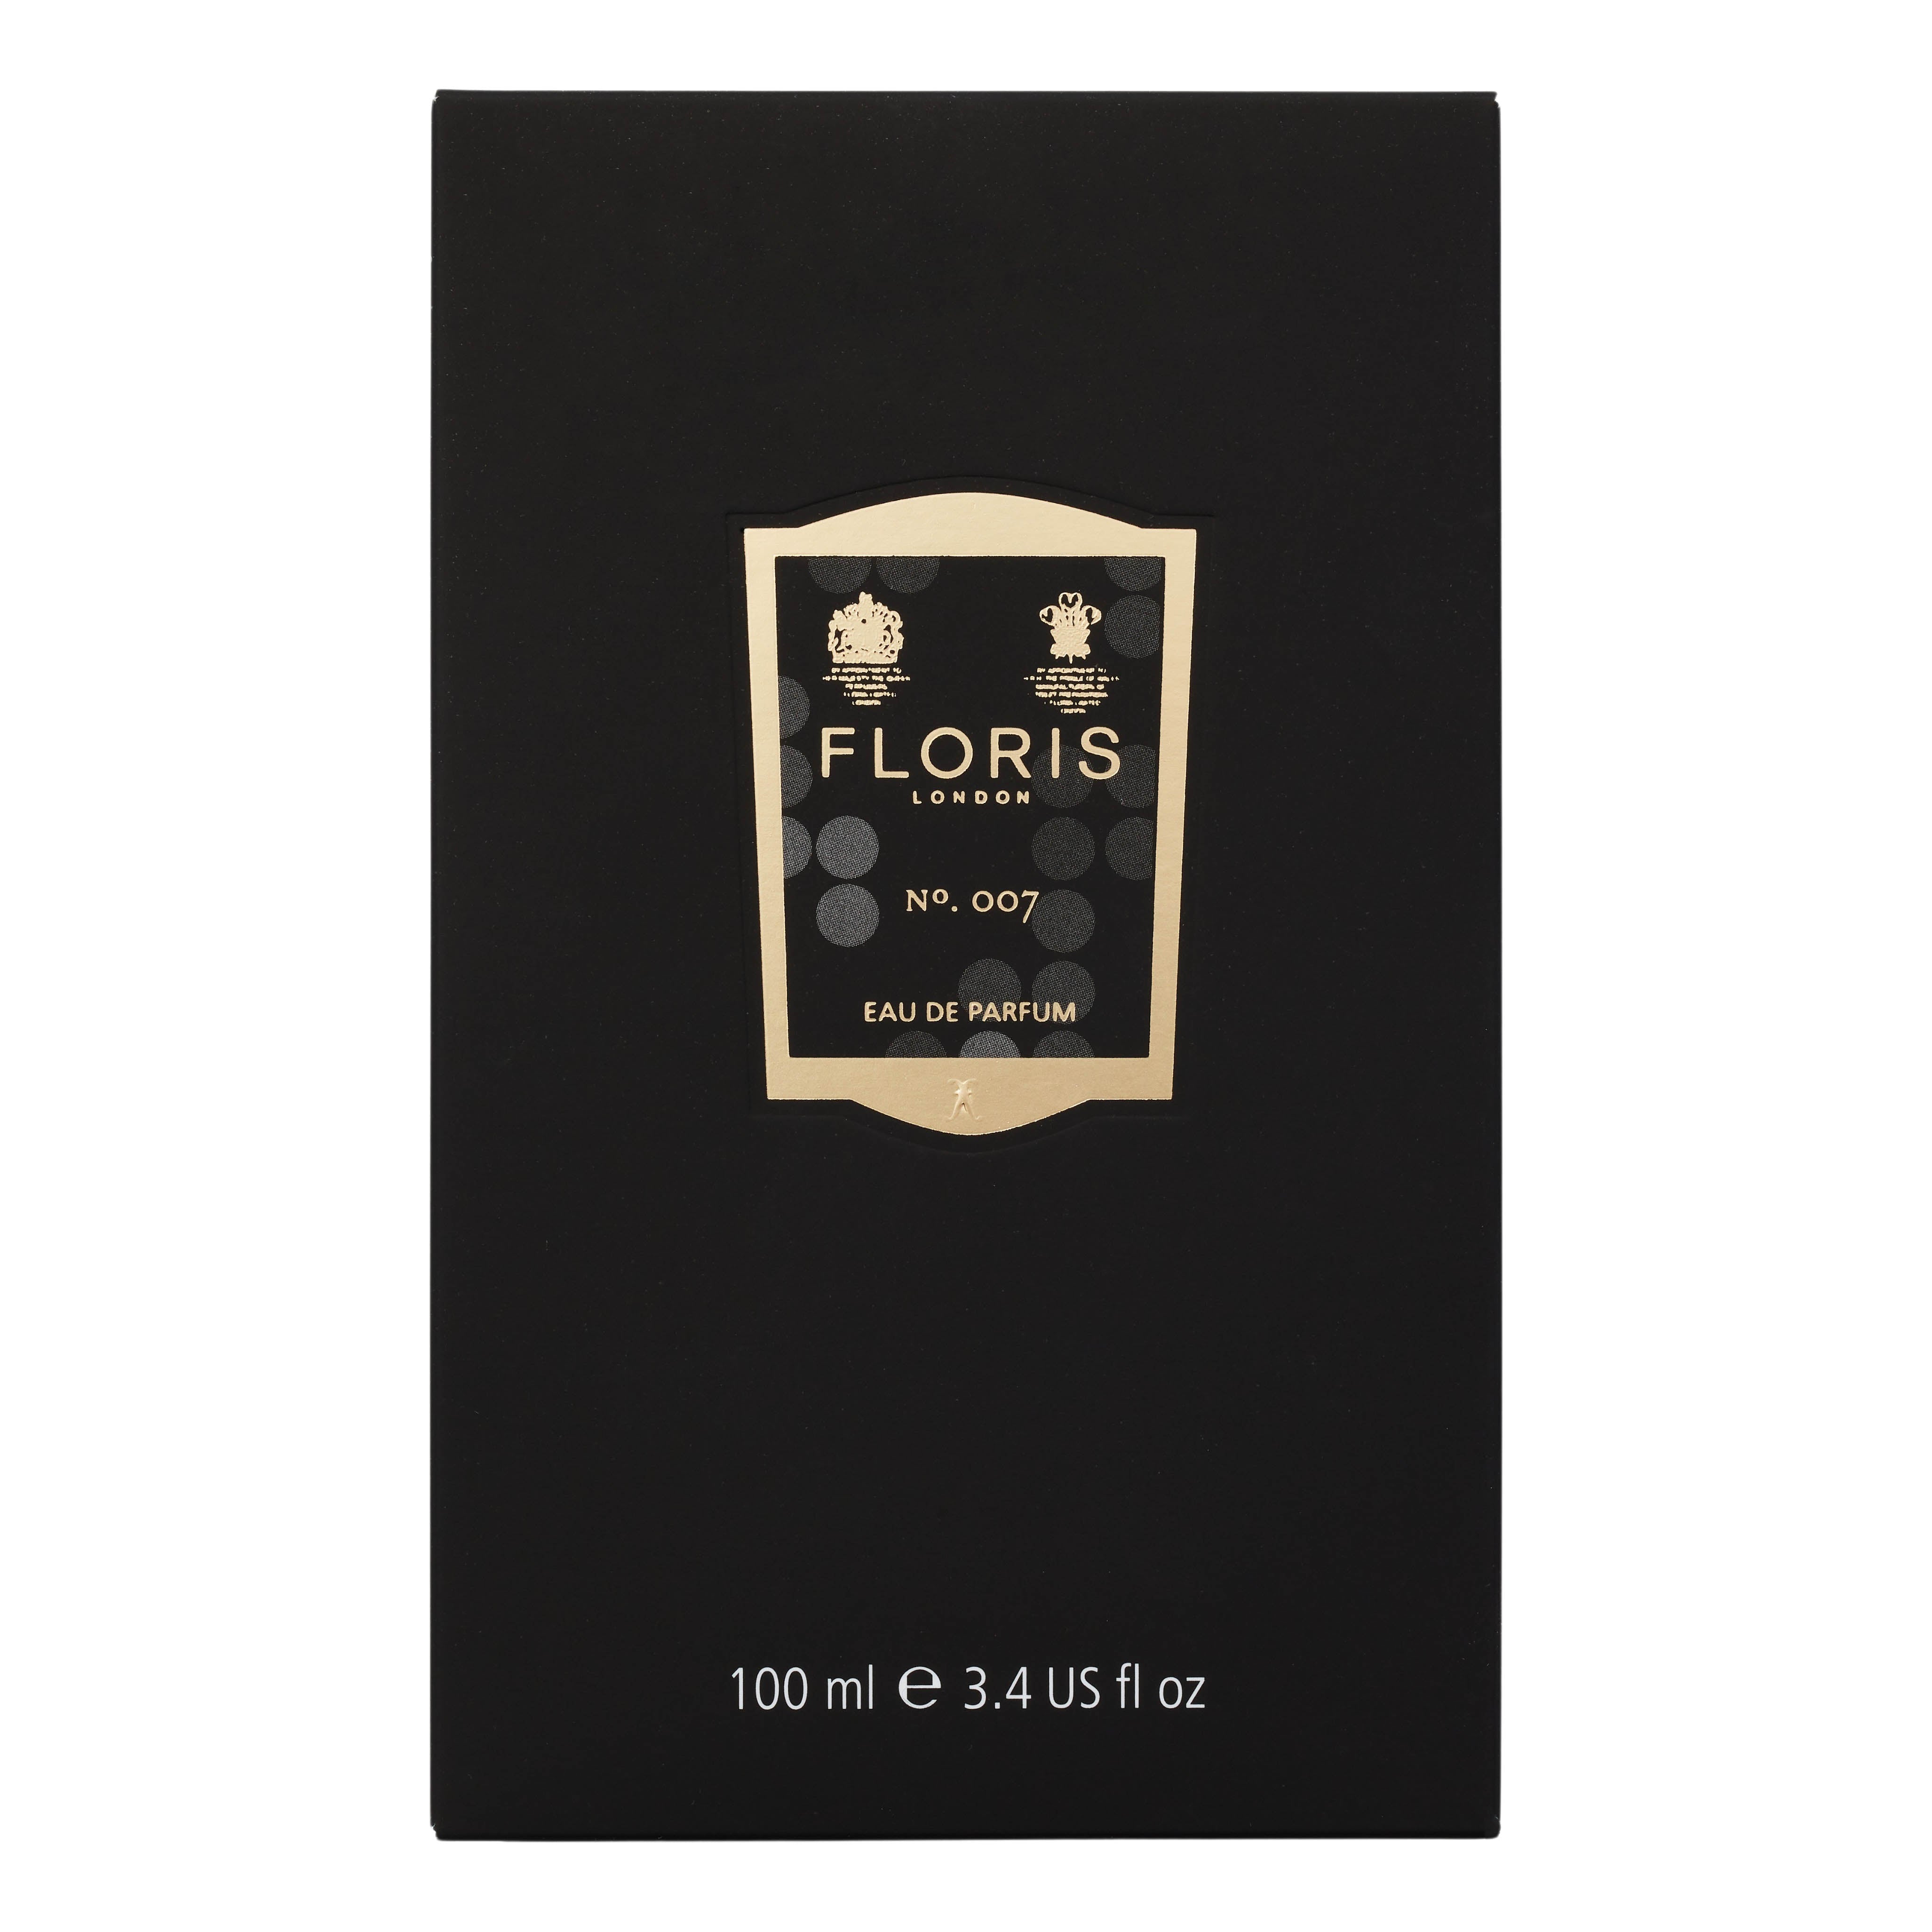 Floris London No. 007 Eau de Parfum